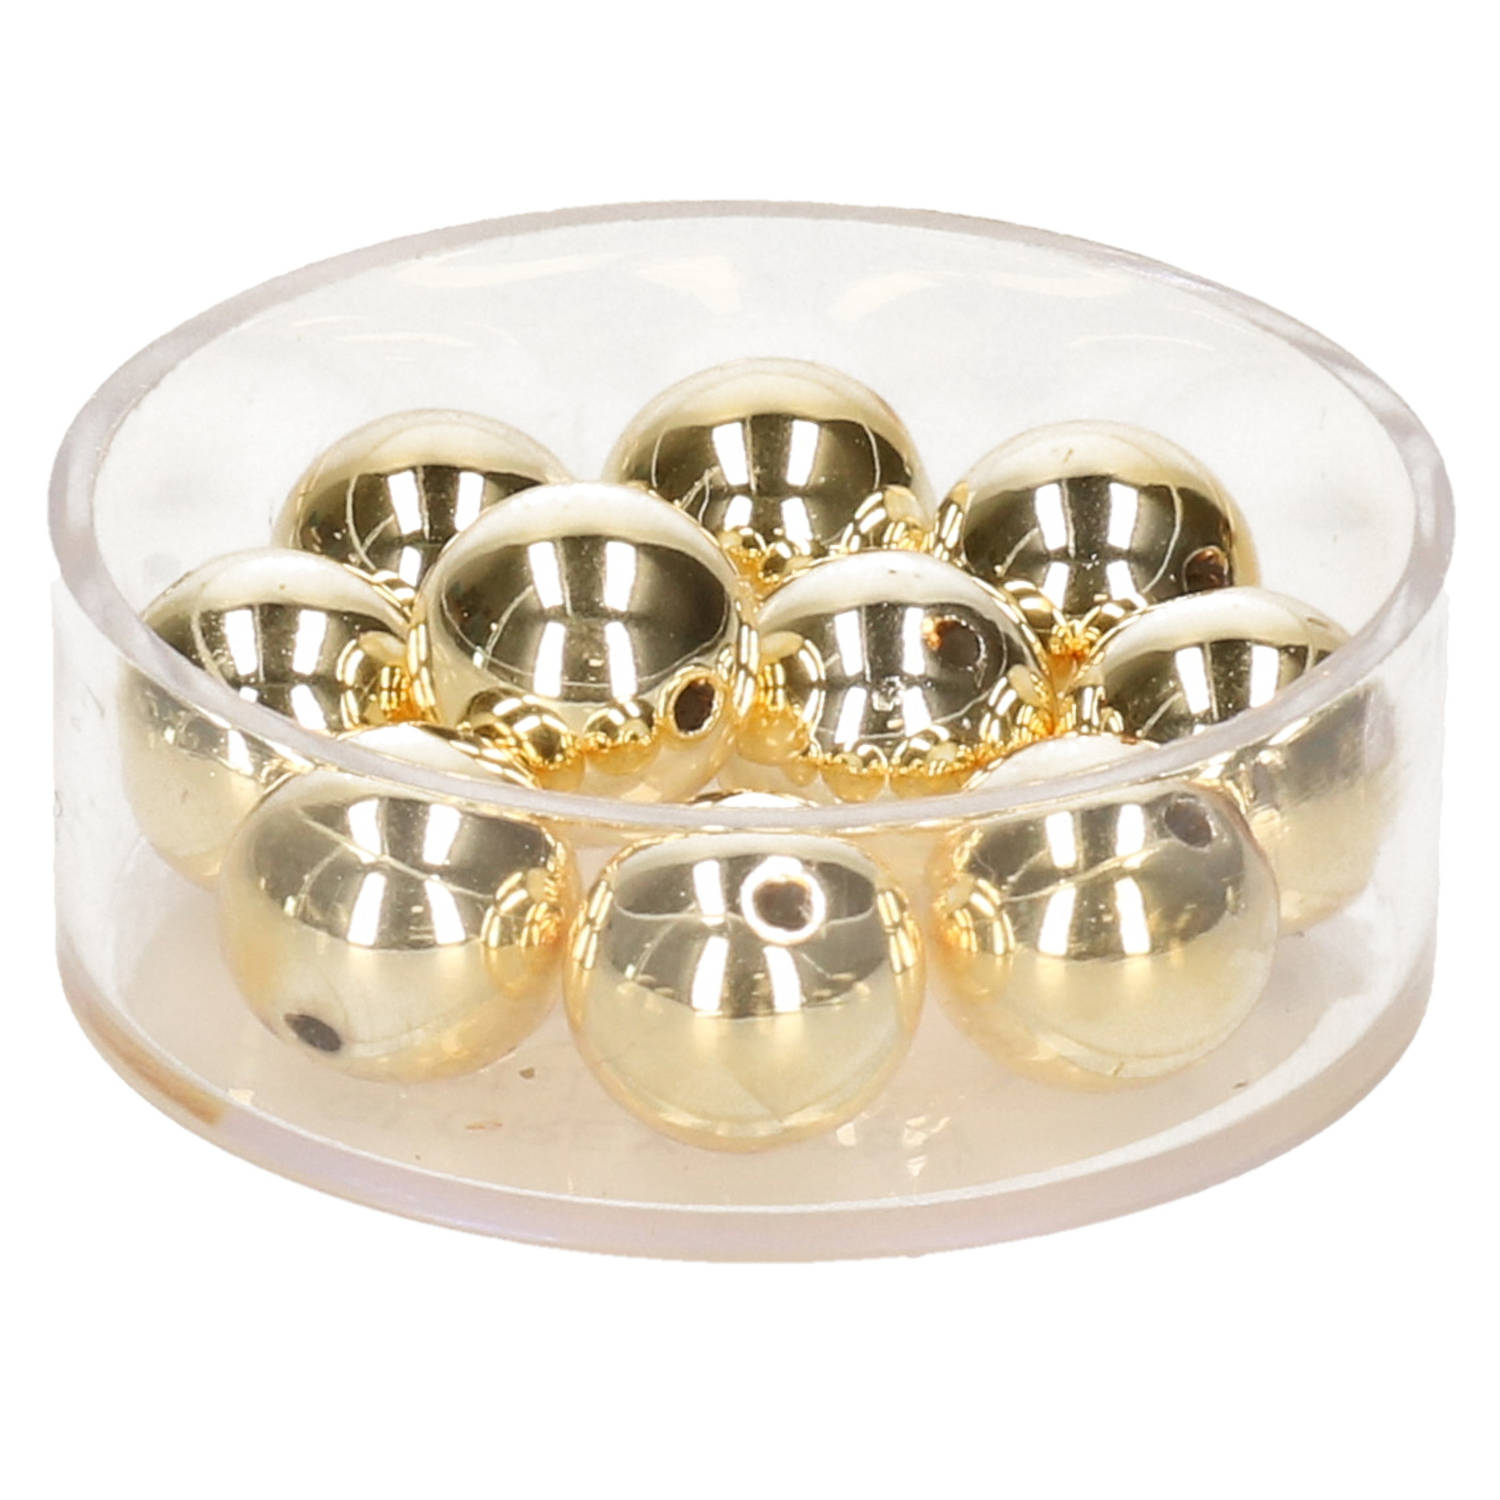 35x Stuks Metallic Sieraden Maken Kralen In Het Goud Van 6 Mm Kunststof Waskralen Voor Armbandje-ket